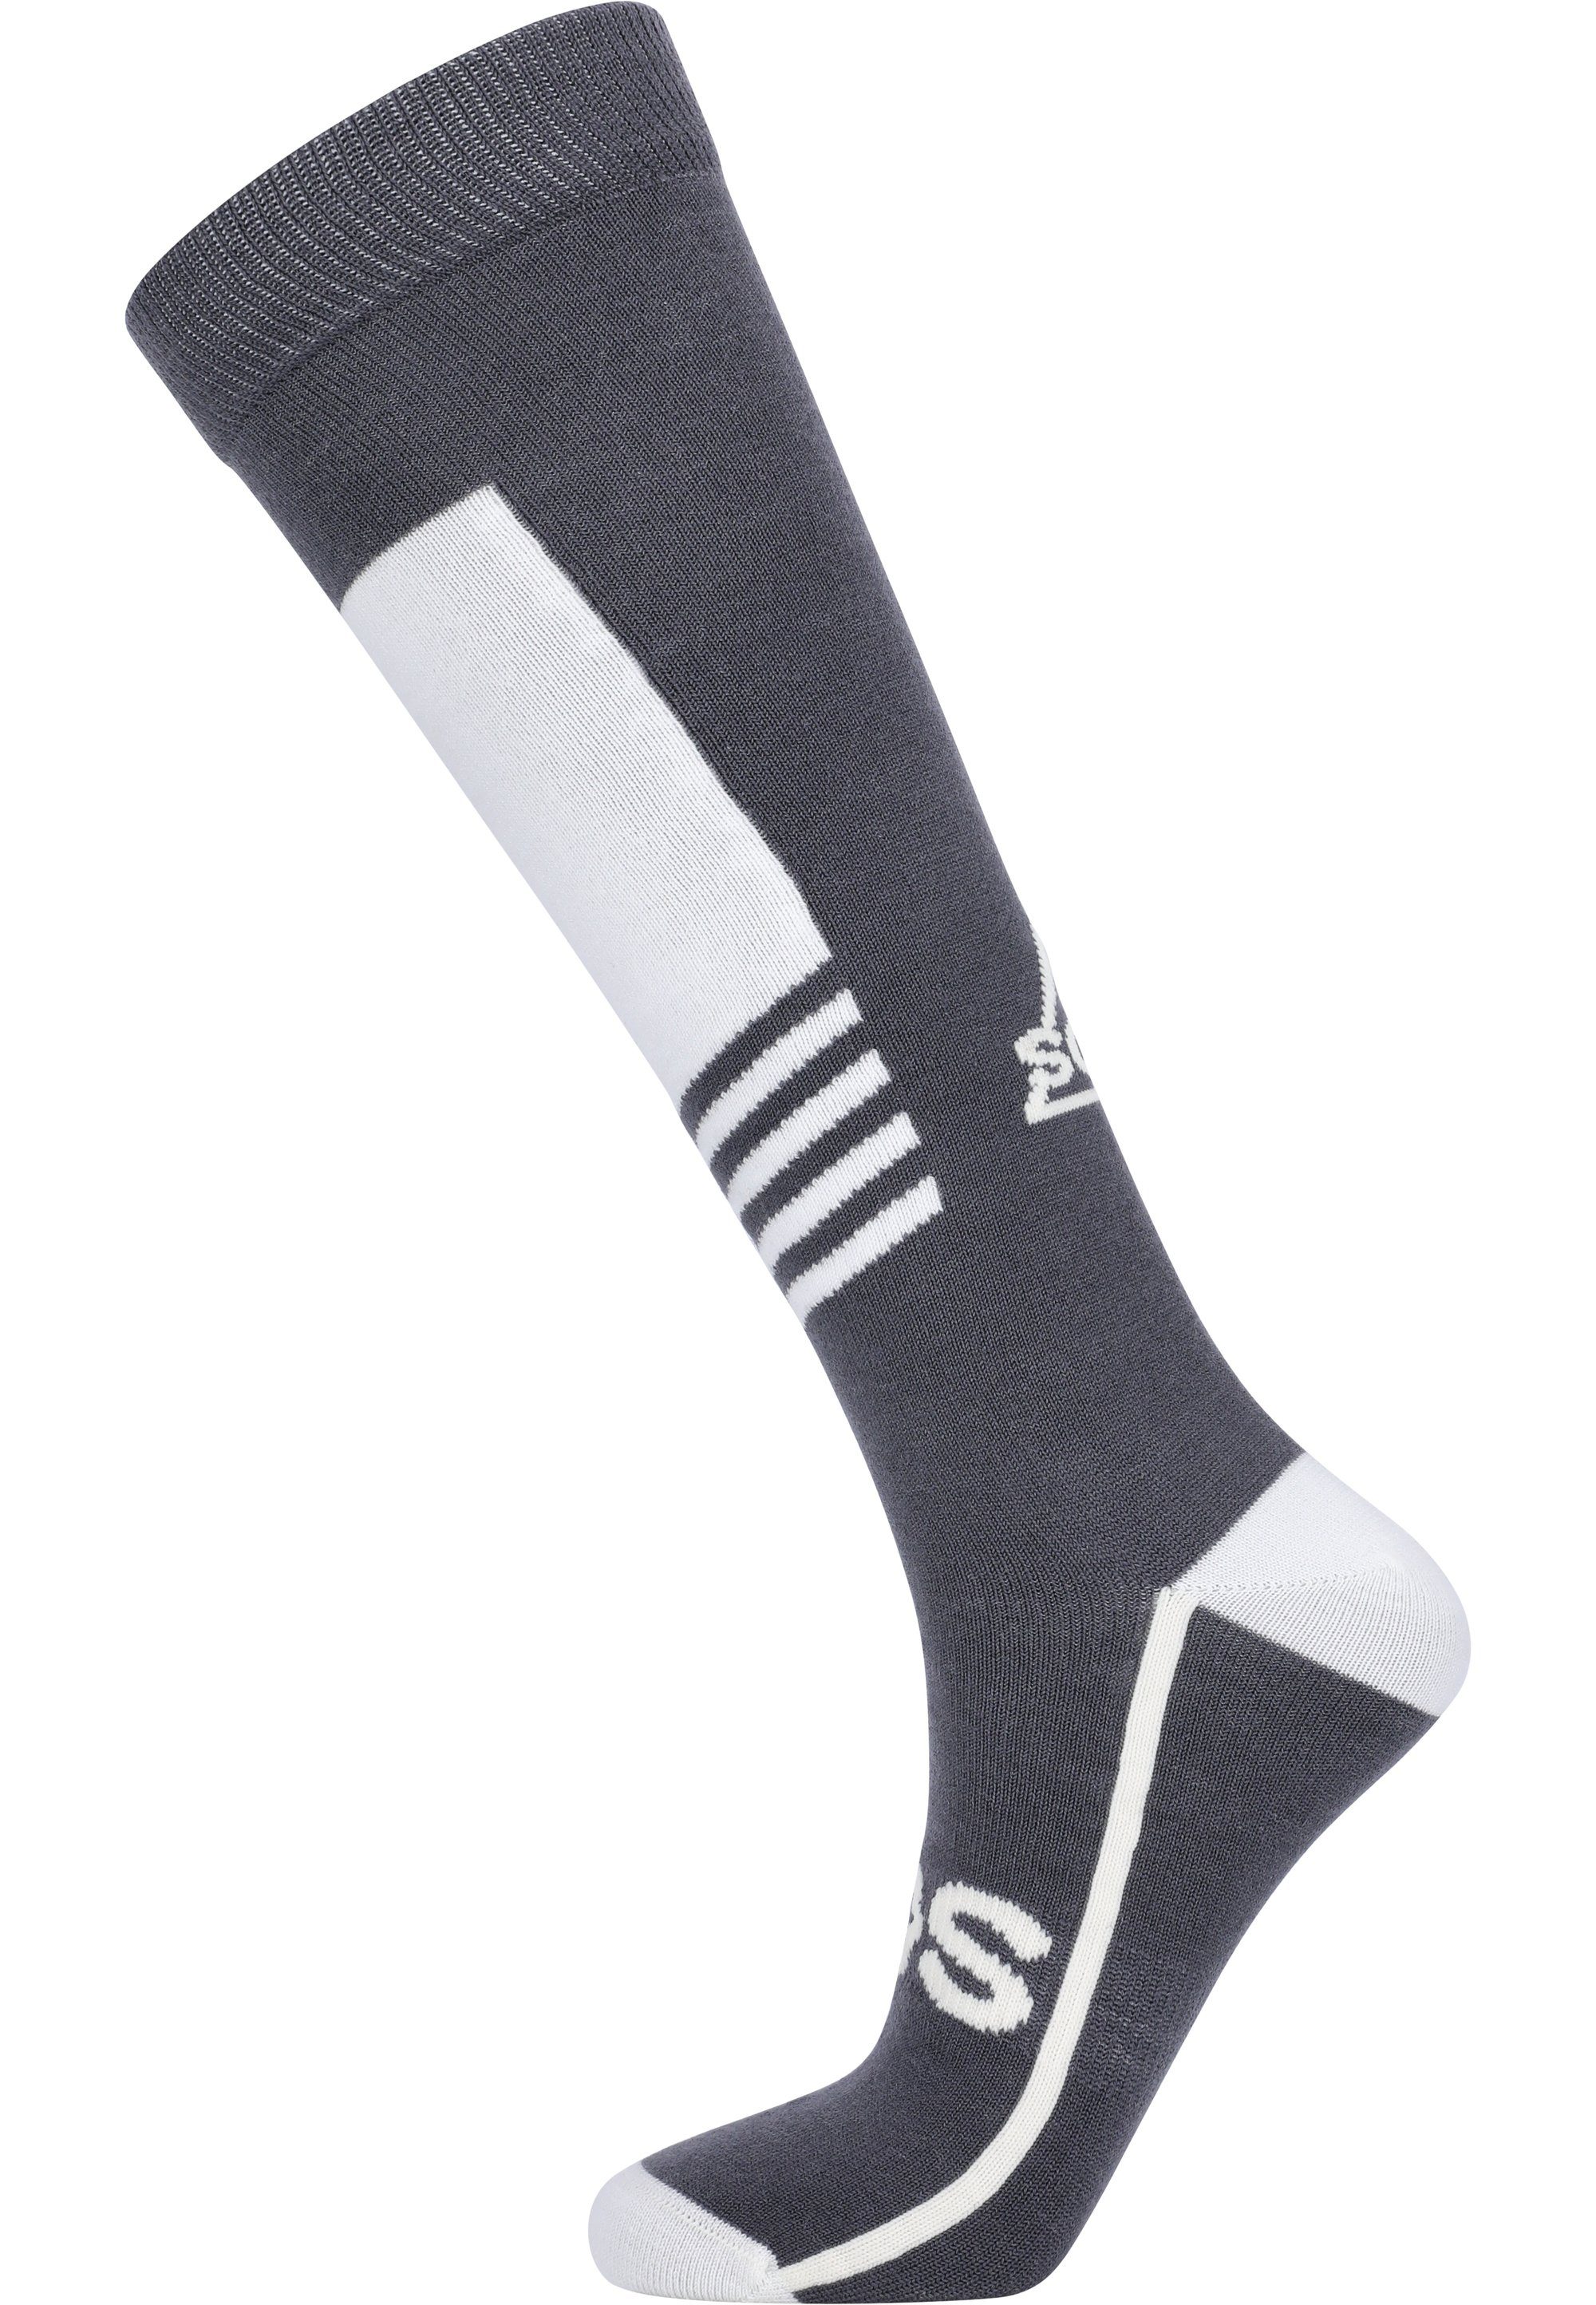 SOS Socken La Hoya mit besonders wärmender Funktion grau